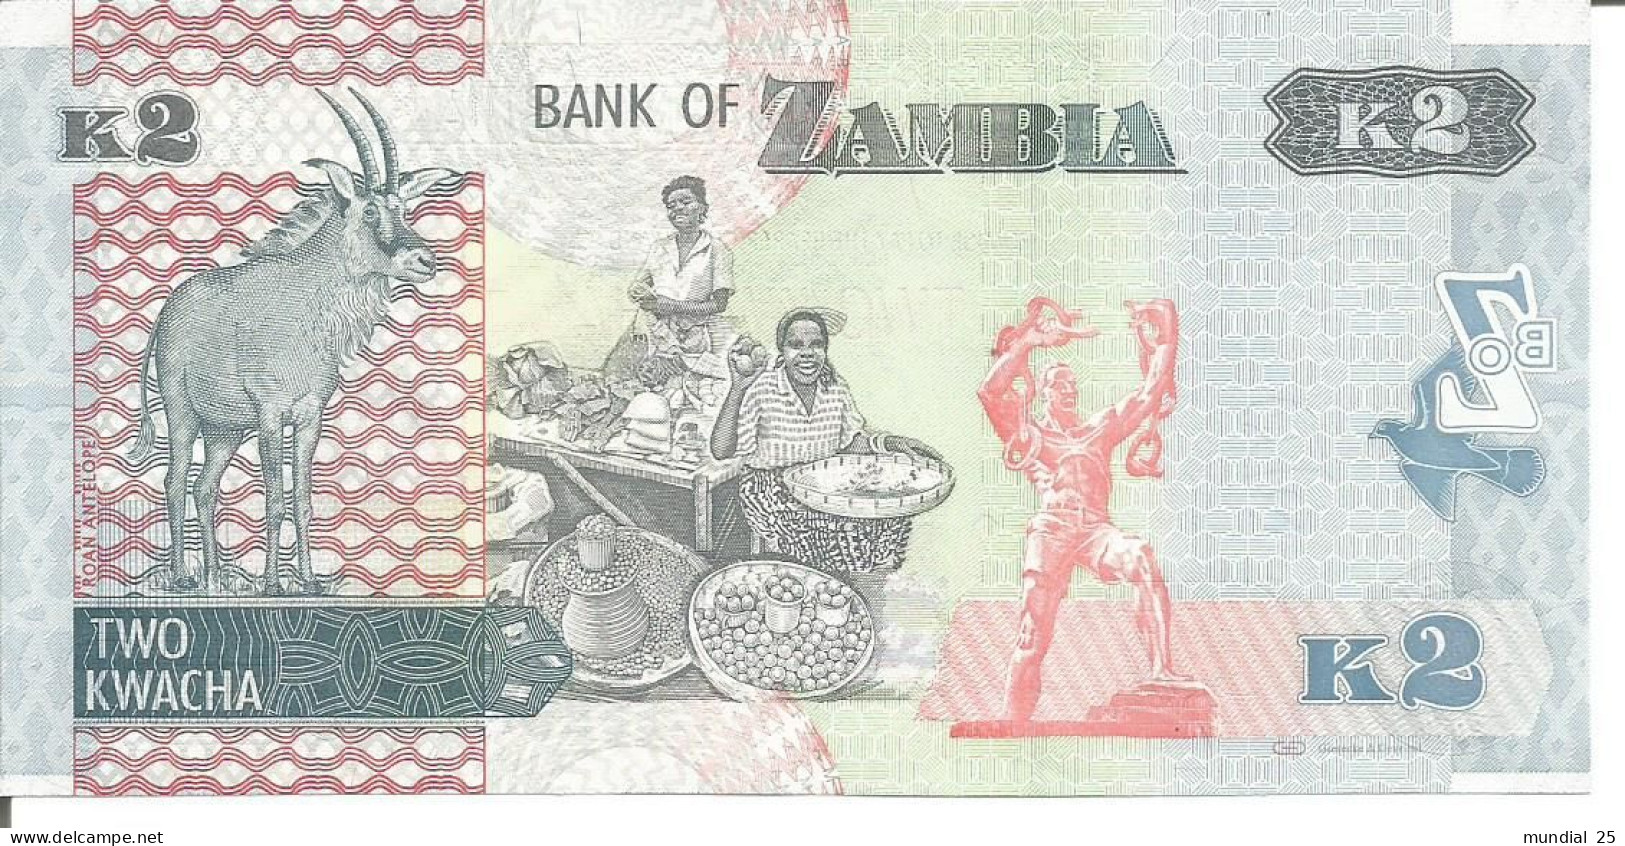 ZAMBIA 2 KWACHA 2012 - Sambia